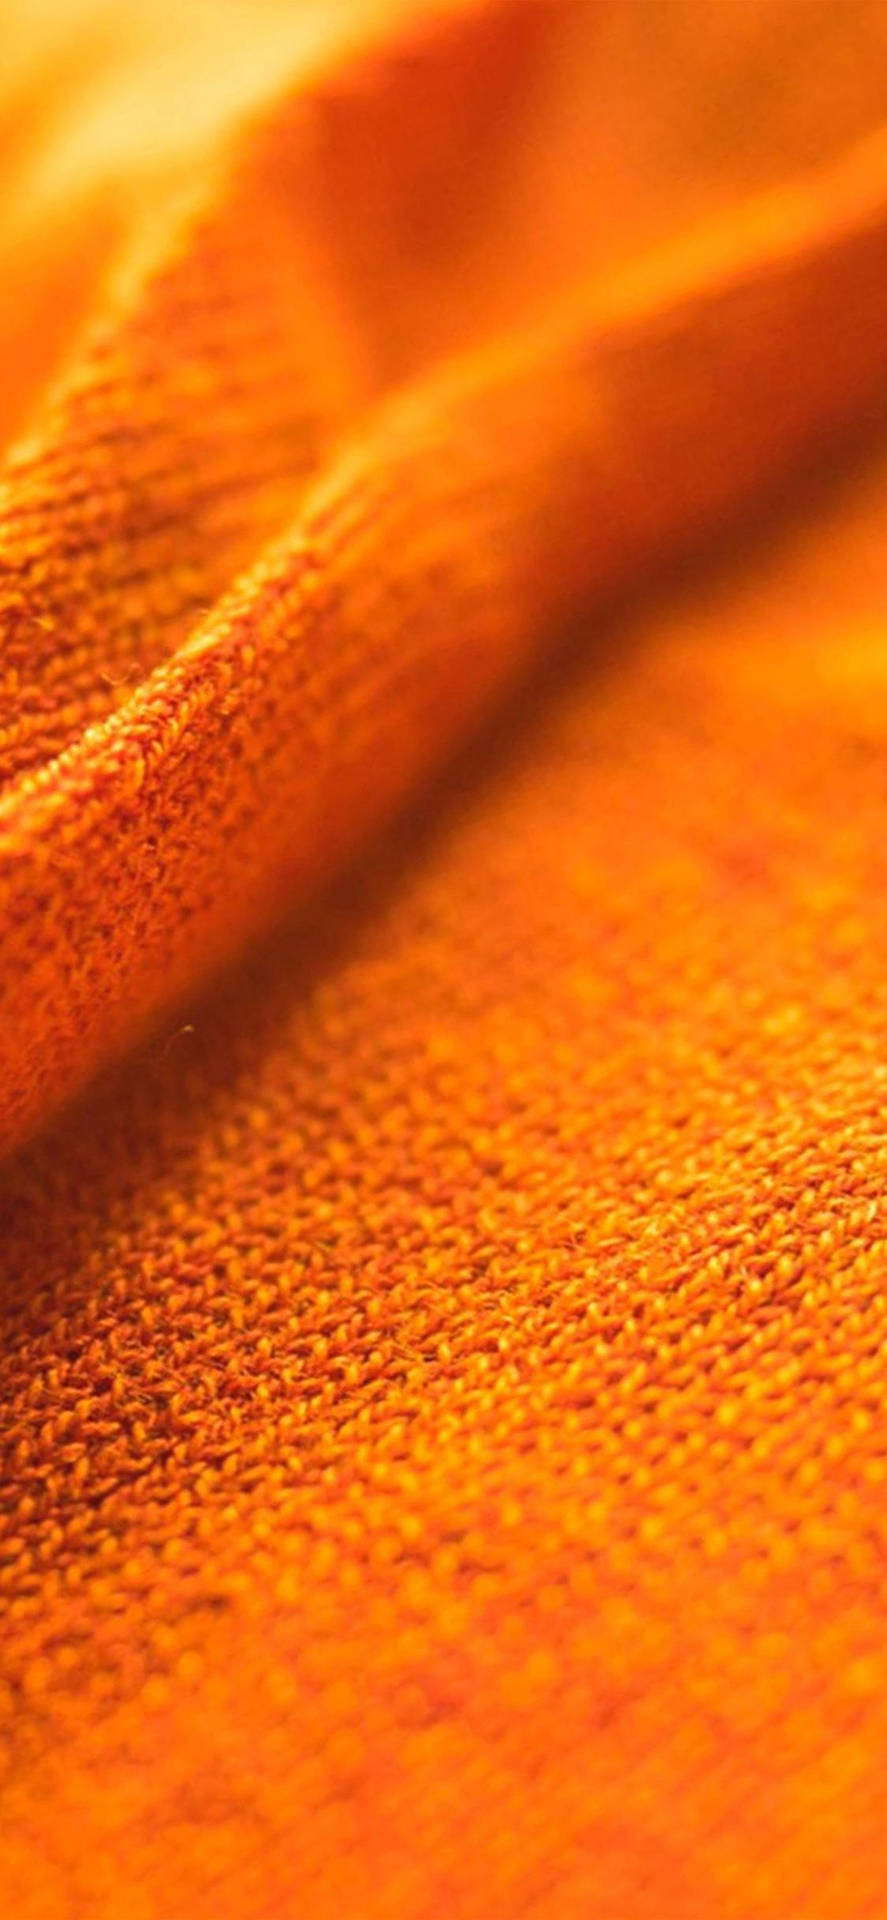 Solid Orange Fur Texture Iphone Wallpaper